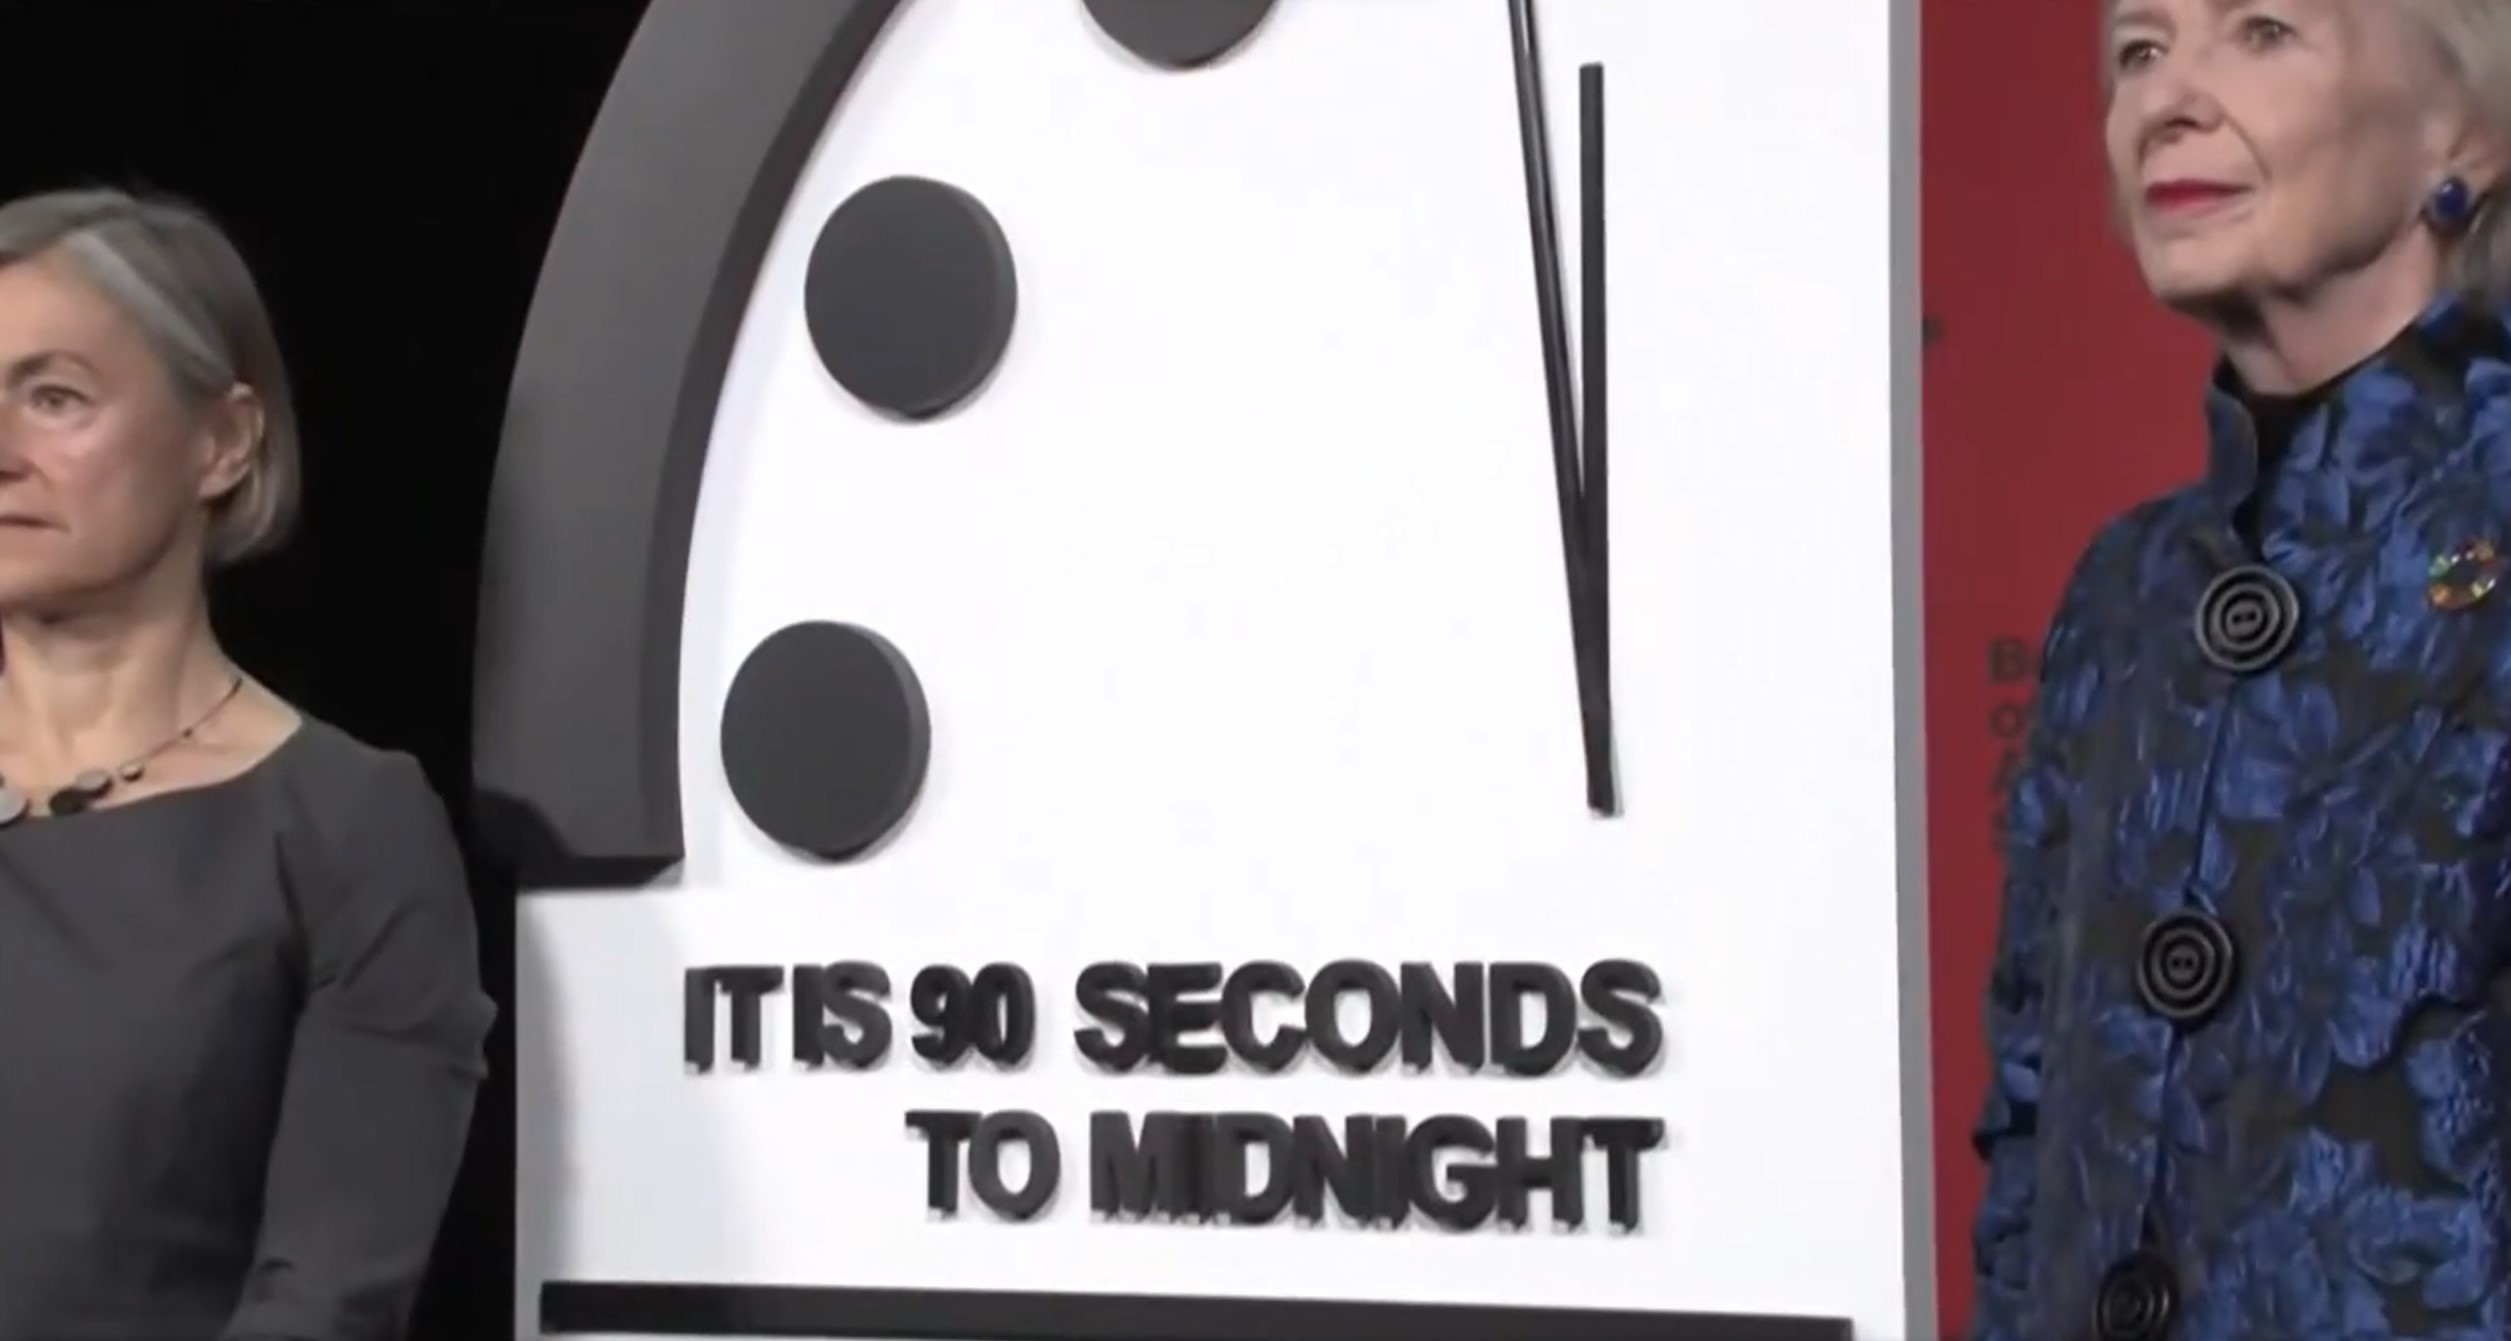 Les scientifiques ont changé l'heure sur l'horloge de la fin du monde (et pas dans le bon sens)